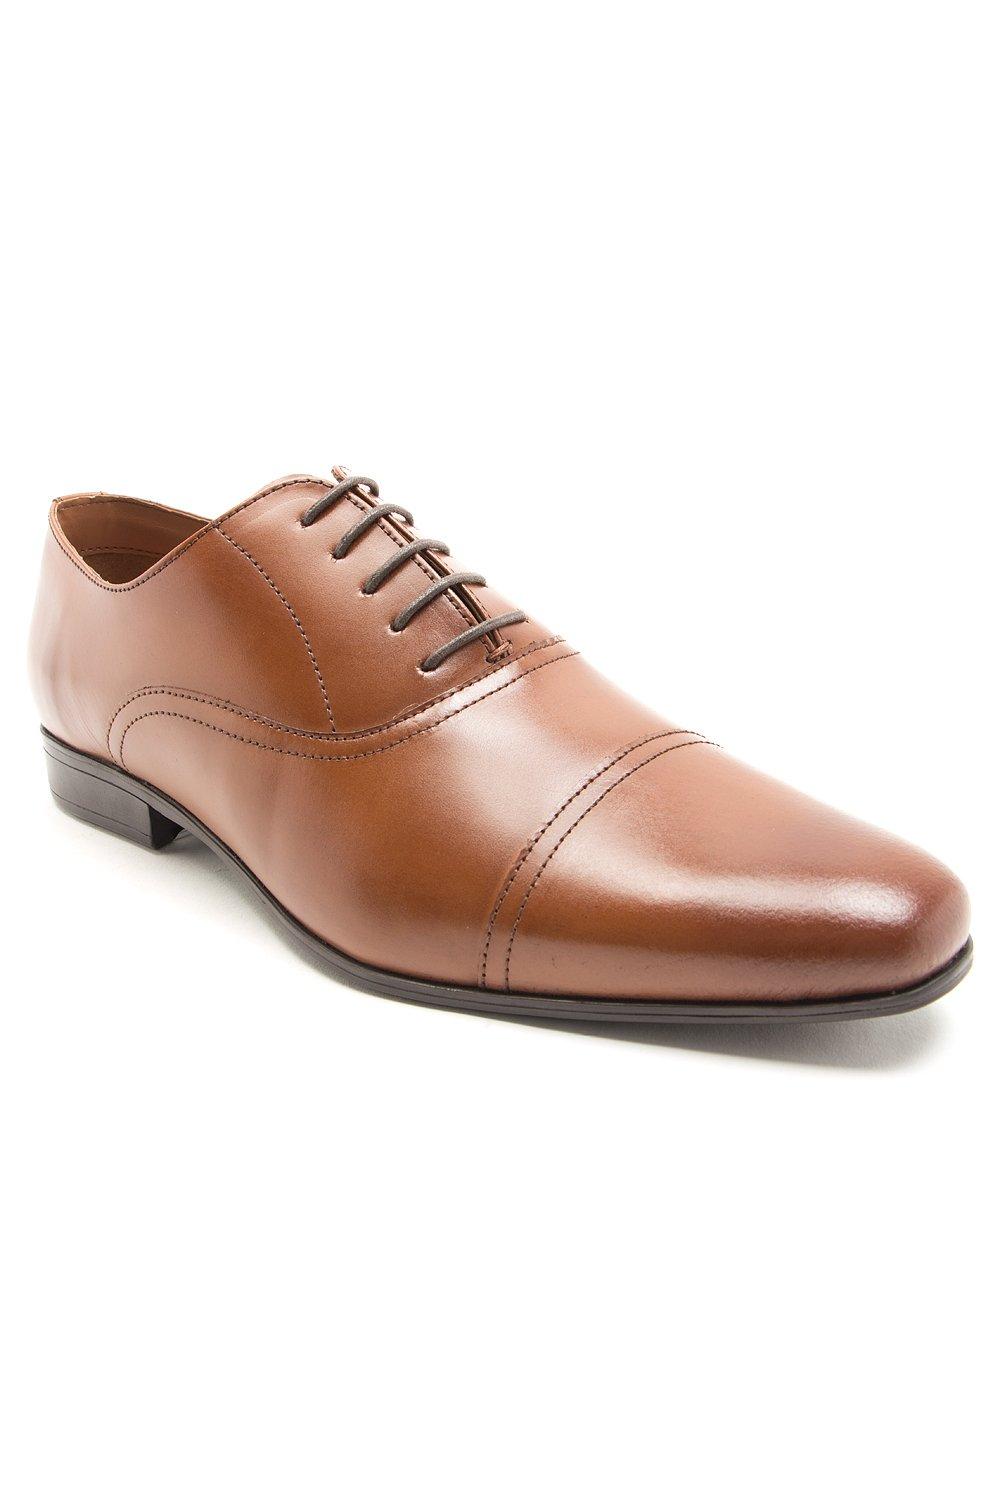 Классические оксфорды Mellor на шнуровке Официальная обувь Thomas Crick, коричневый mellor